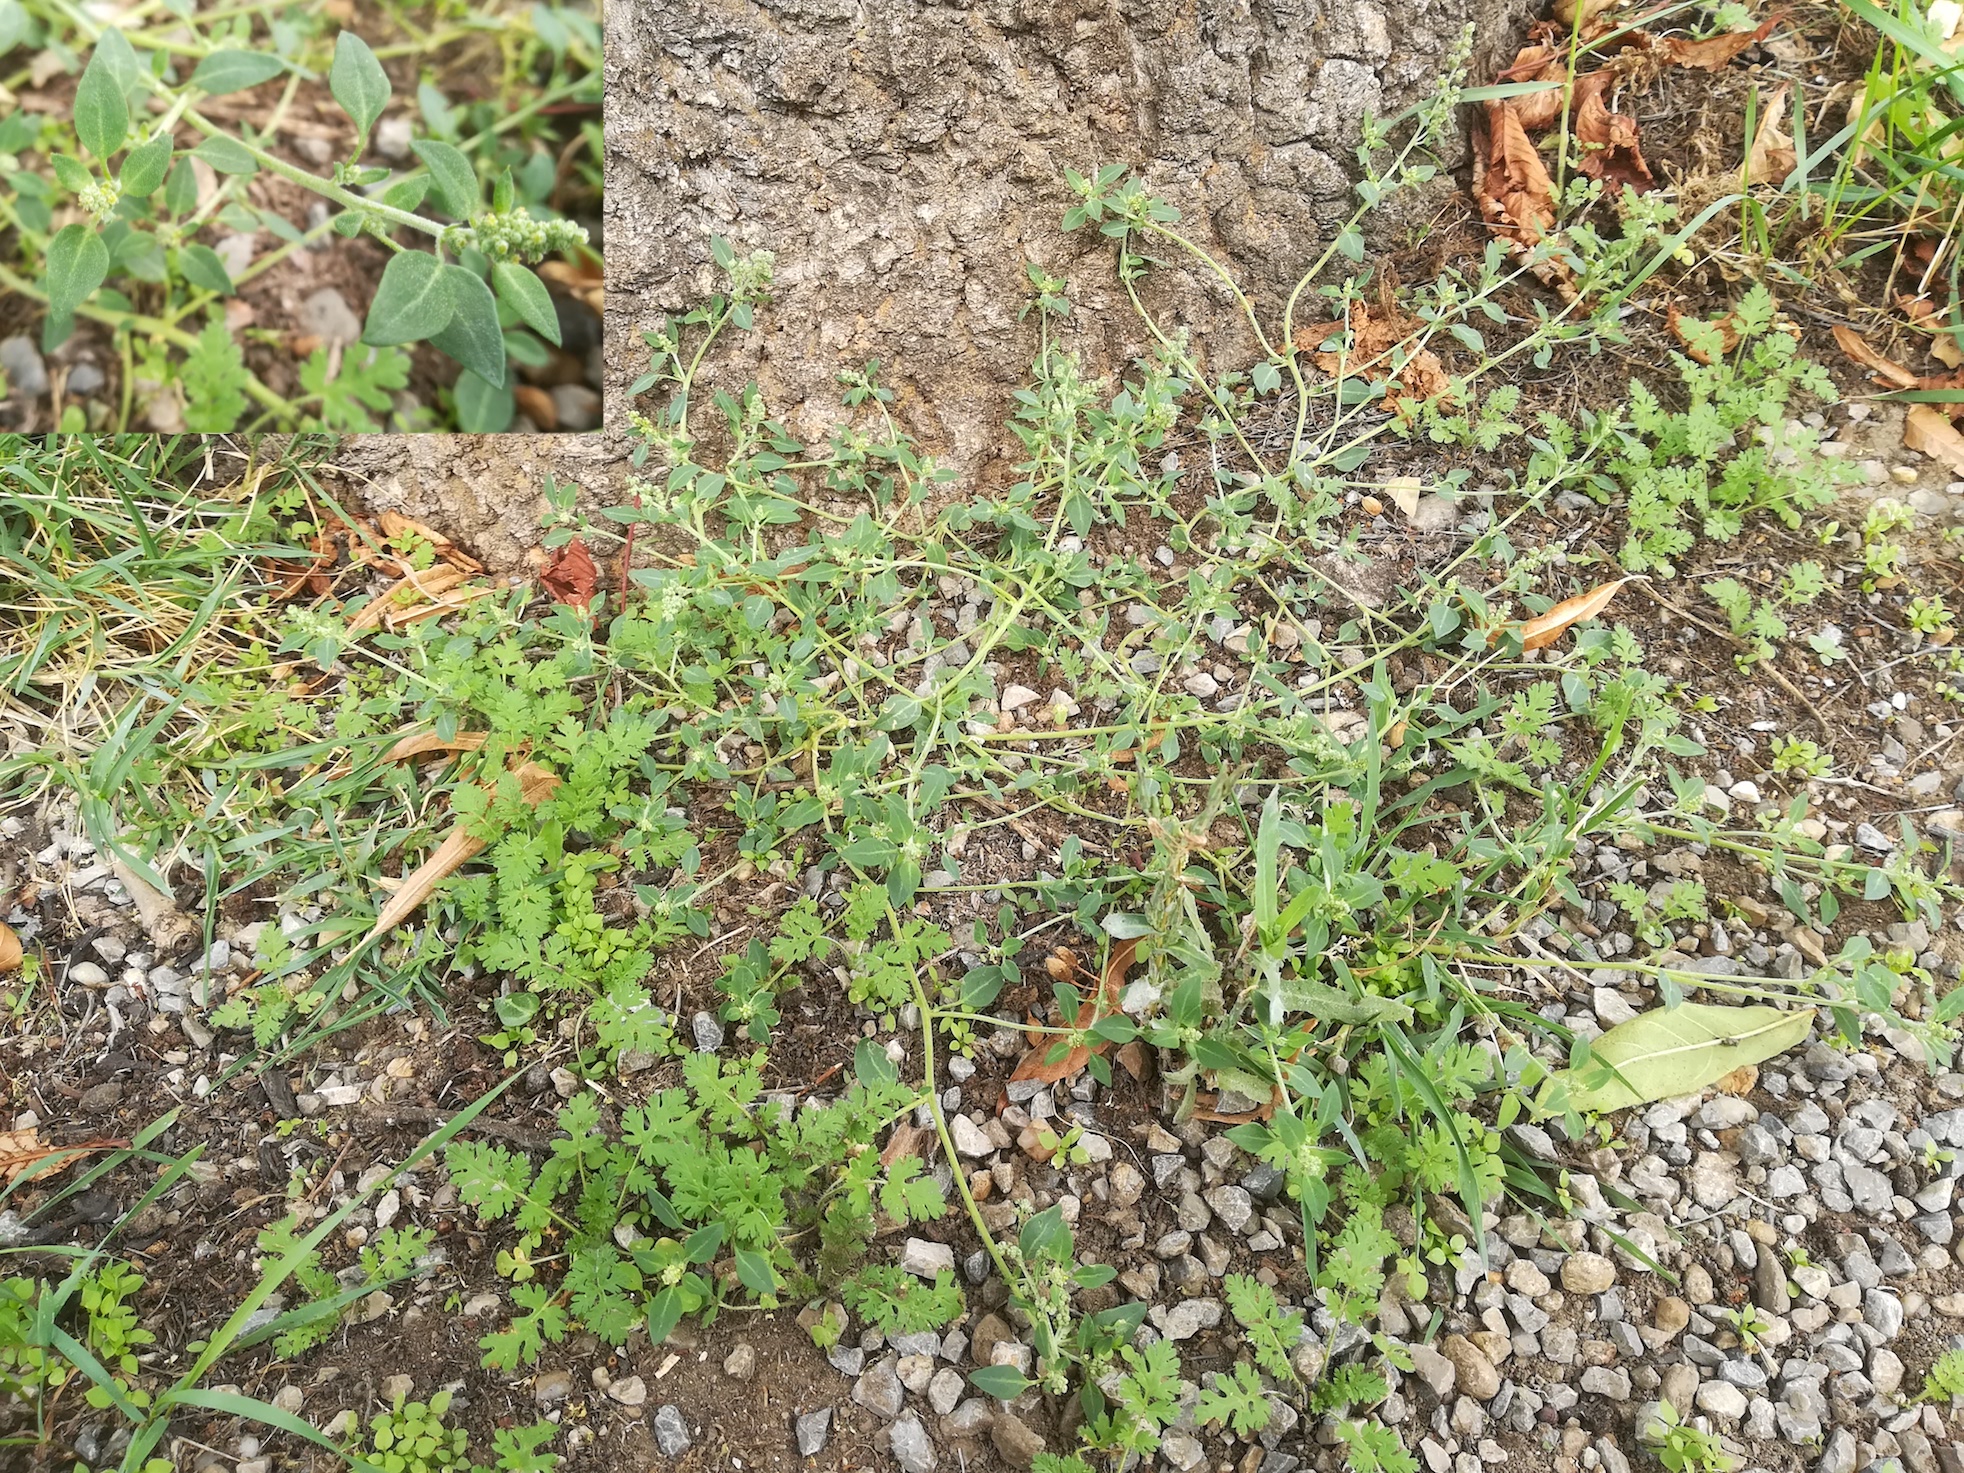 chenopodium vulvaria spielplatz bhf kledering_20180916_130633.jpg